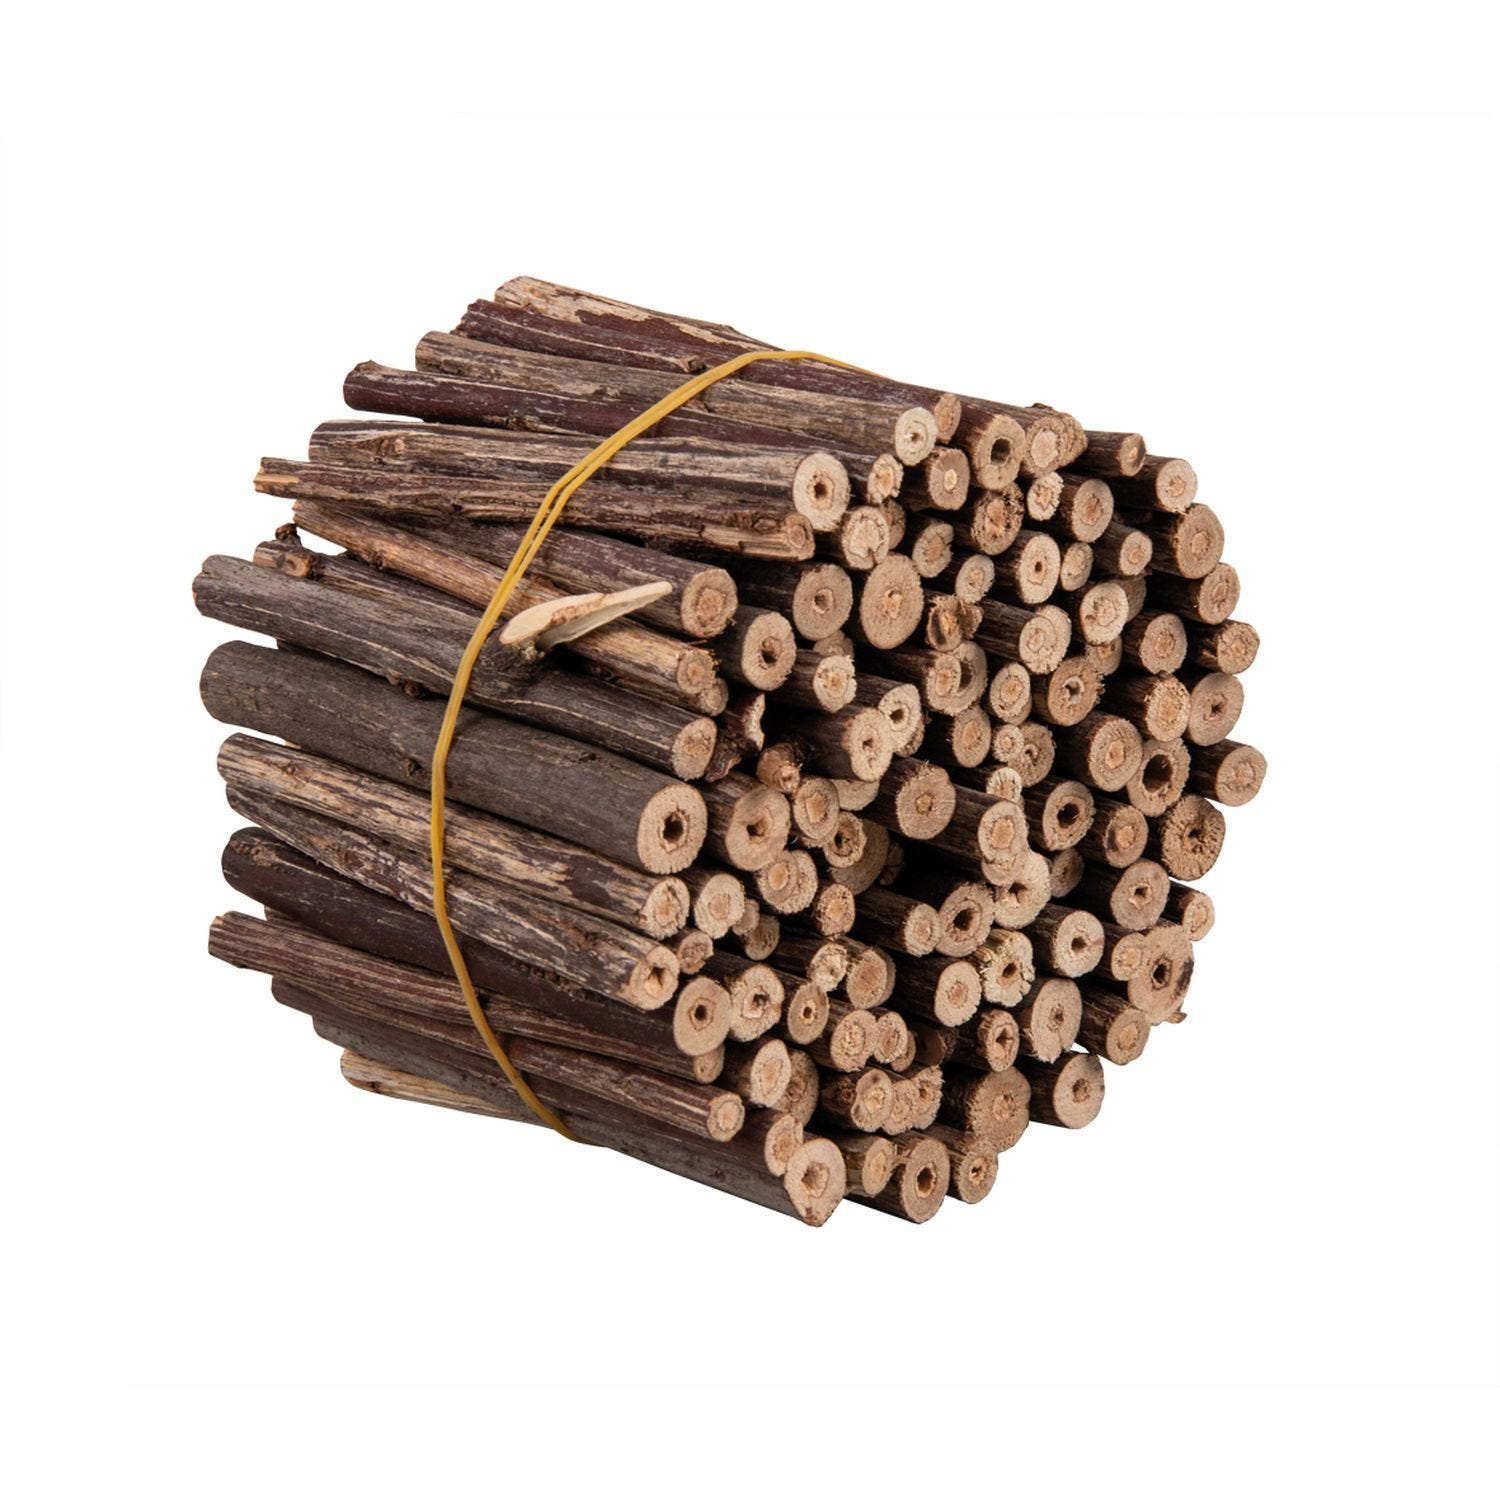 Rami di legno - Decorativo - Naturale - 200 g